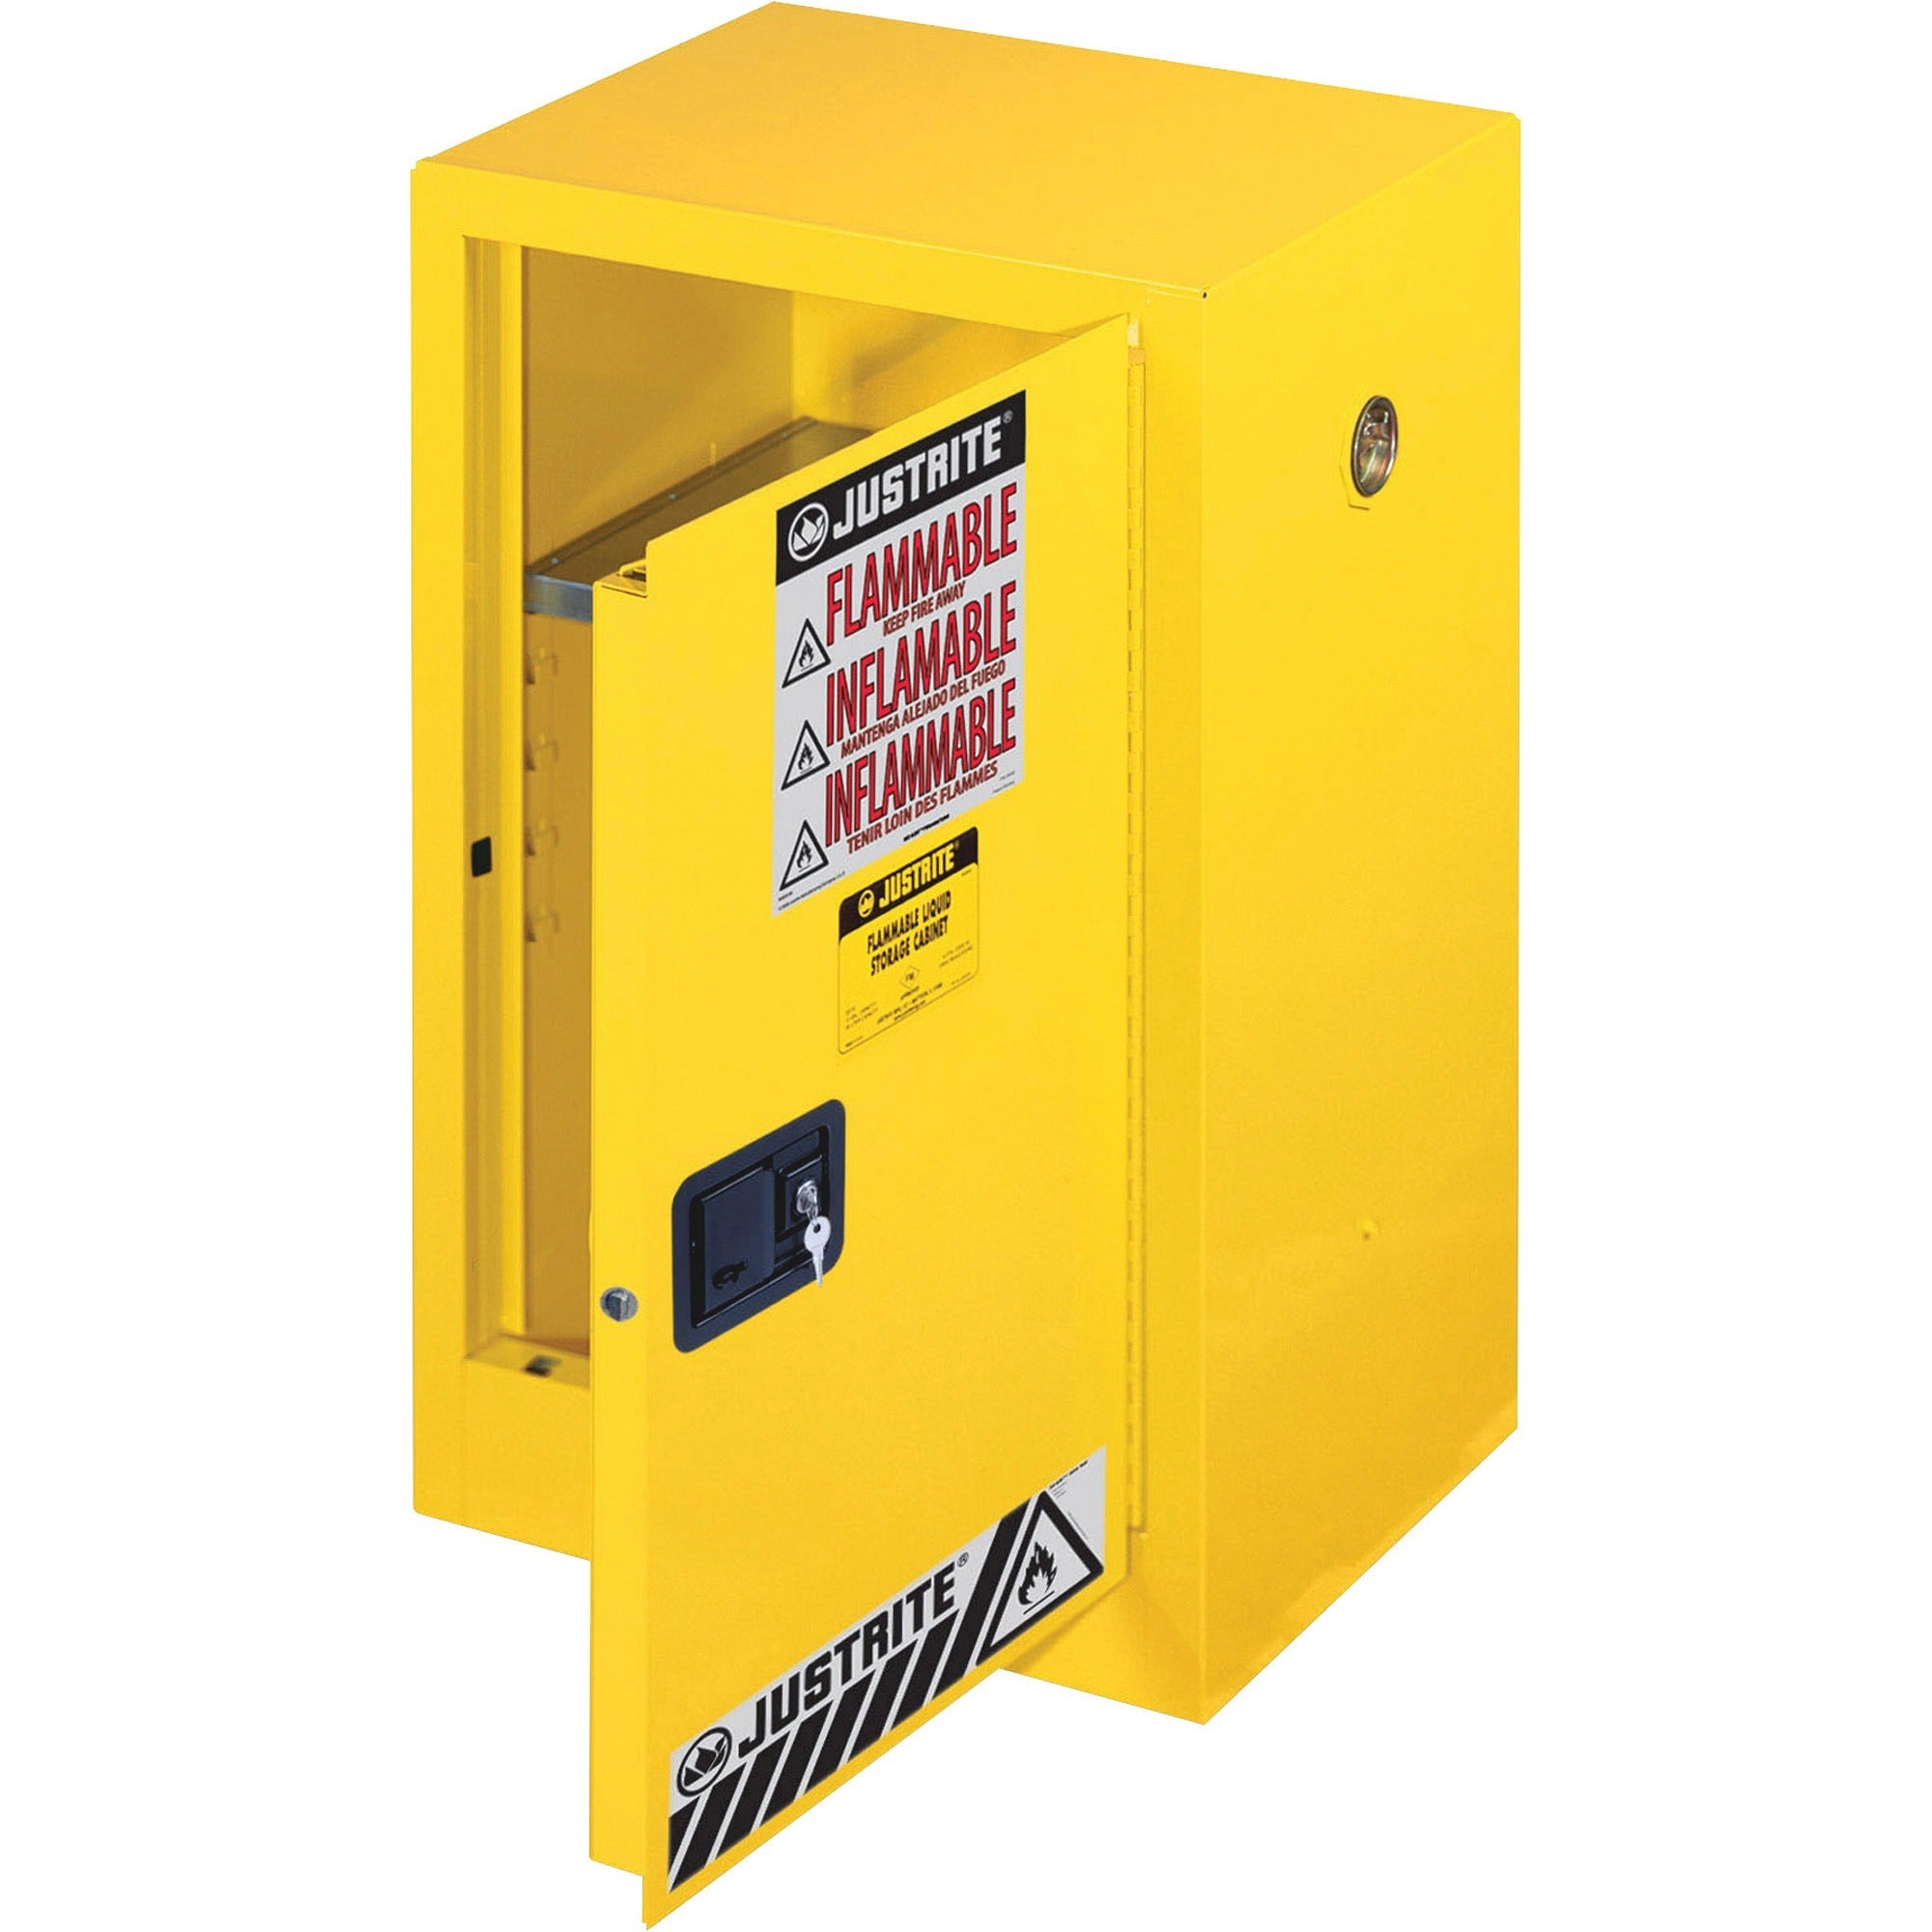 Justrite Flammable Liquid Cabinet - 18" x 23.3" x 35" - 1 x Shelf(ves) - 1 x Front Open Door(s) - Yellow - 